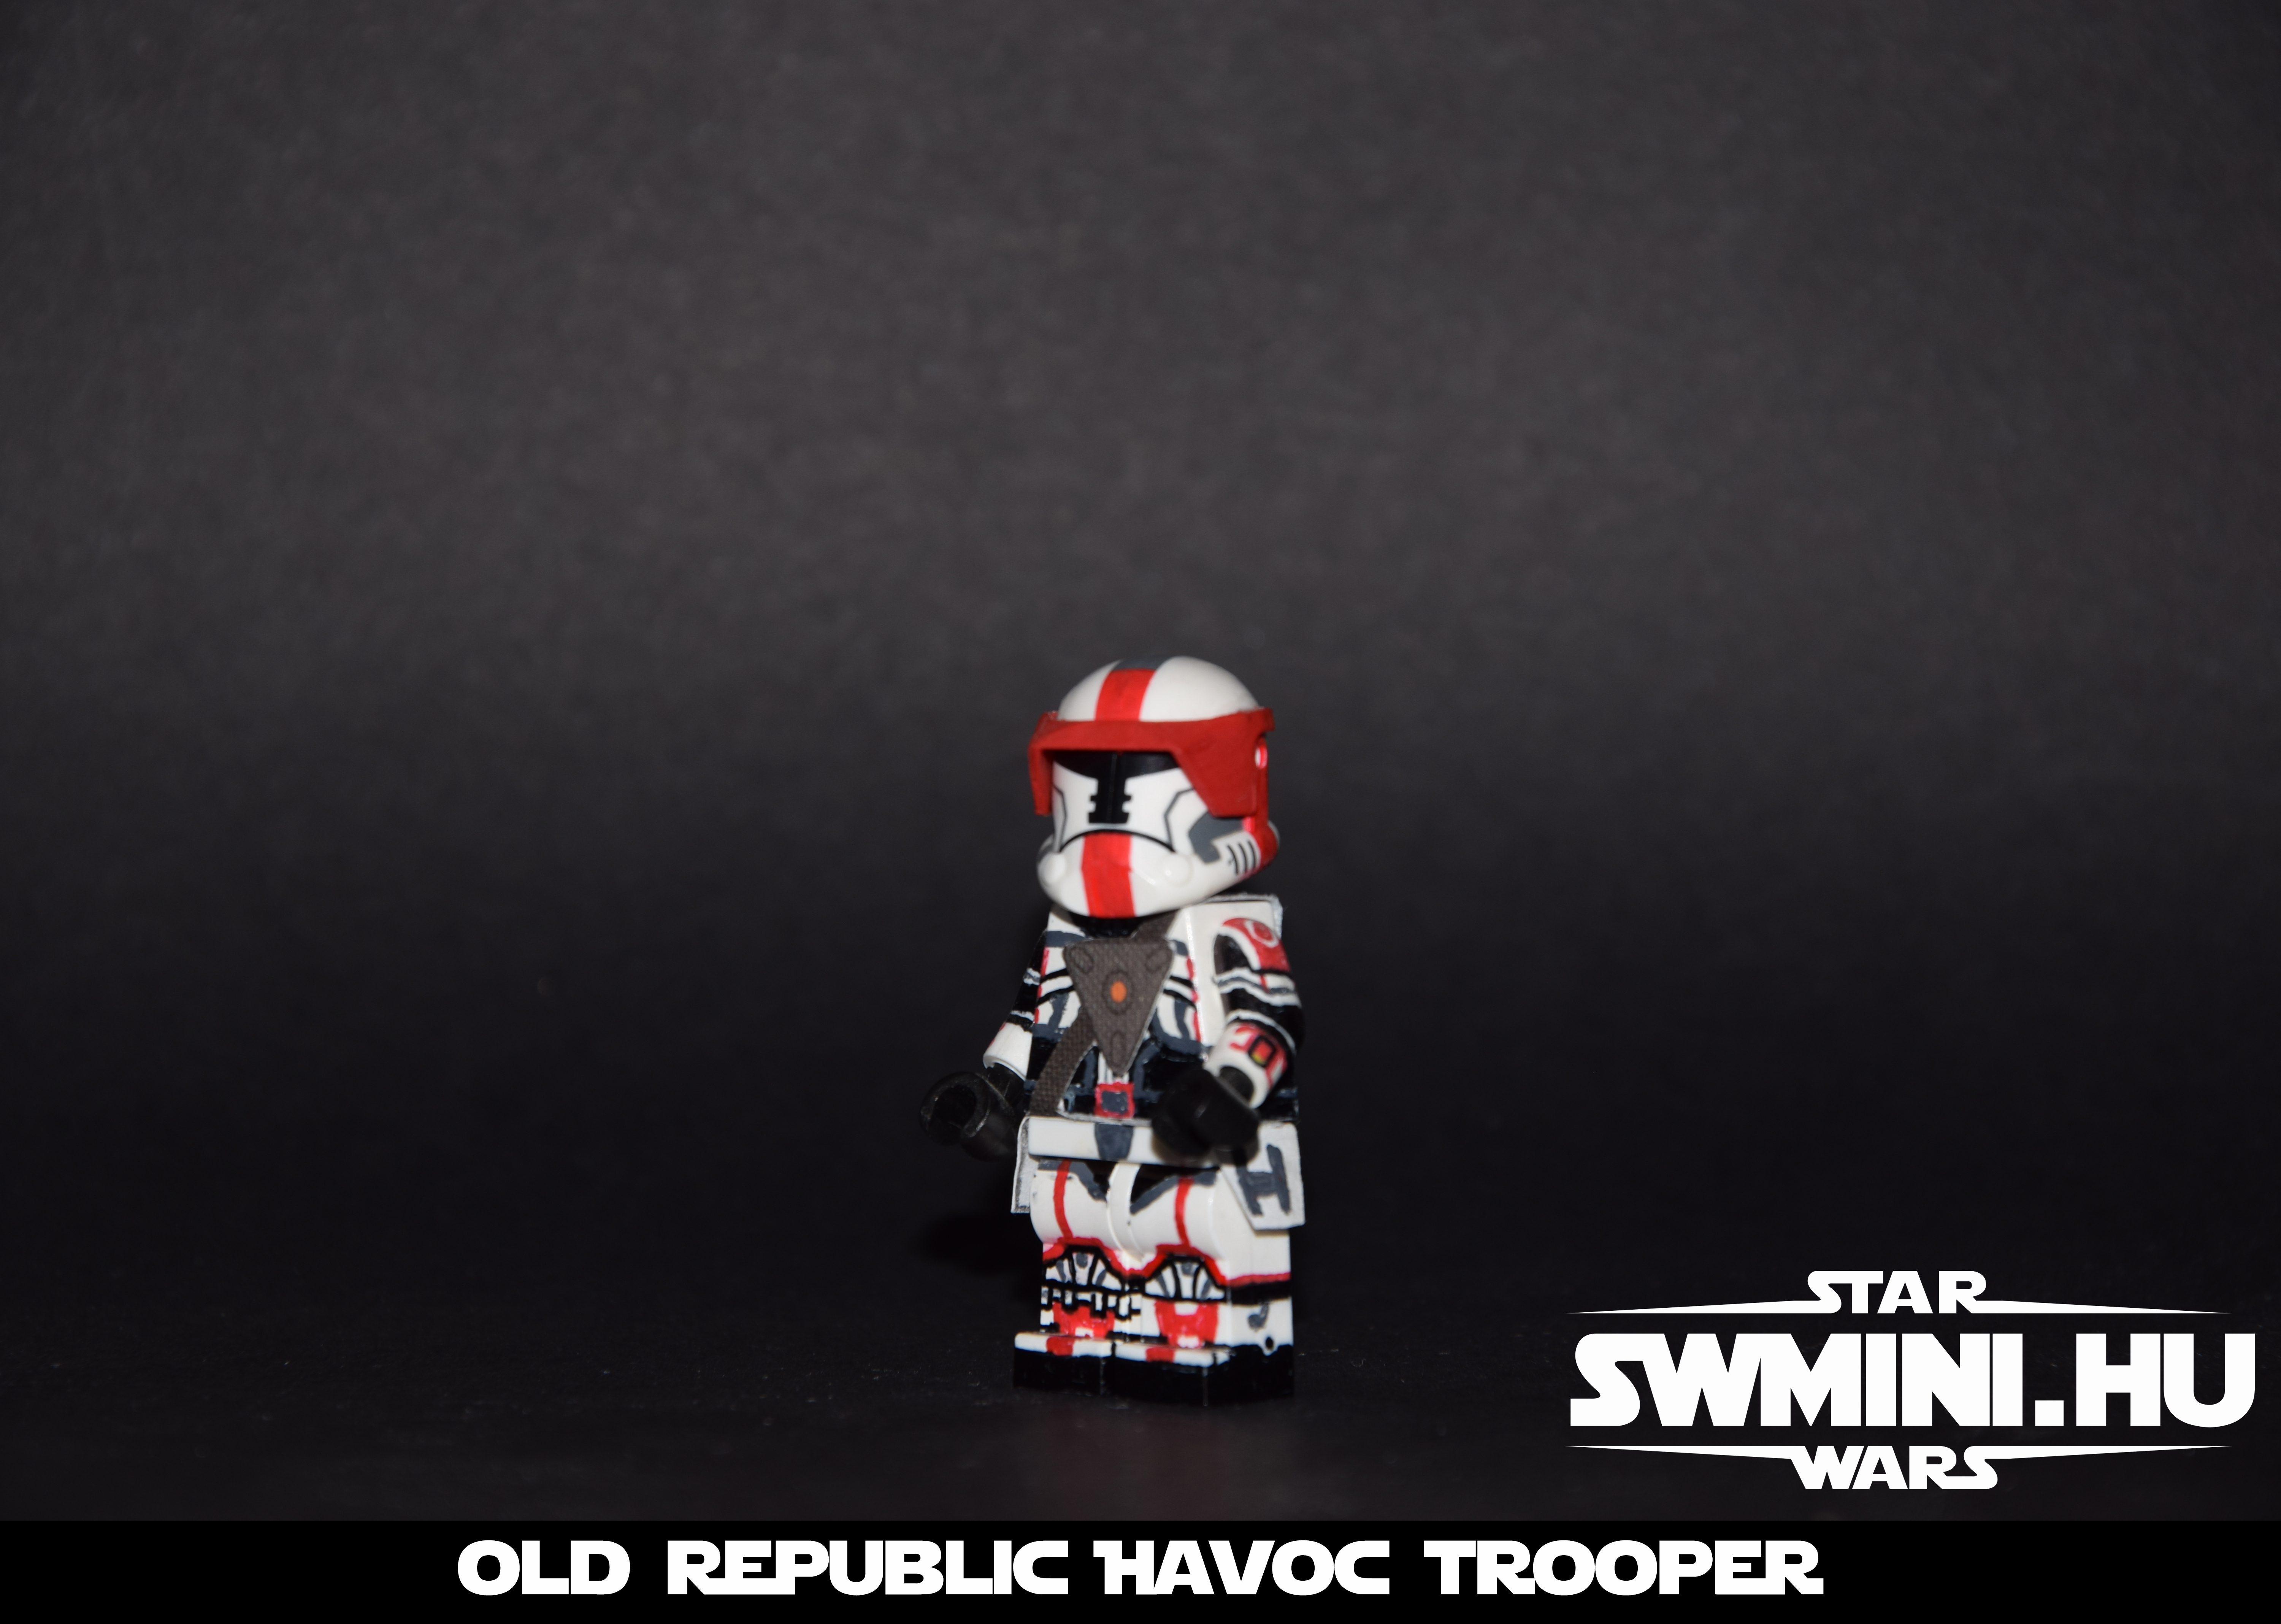 Old Republic Havoc trooper